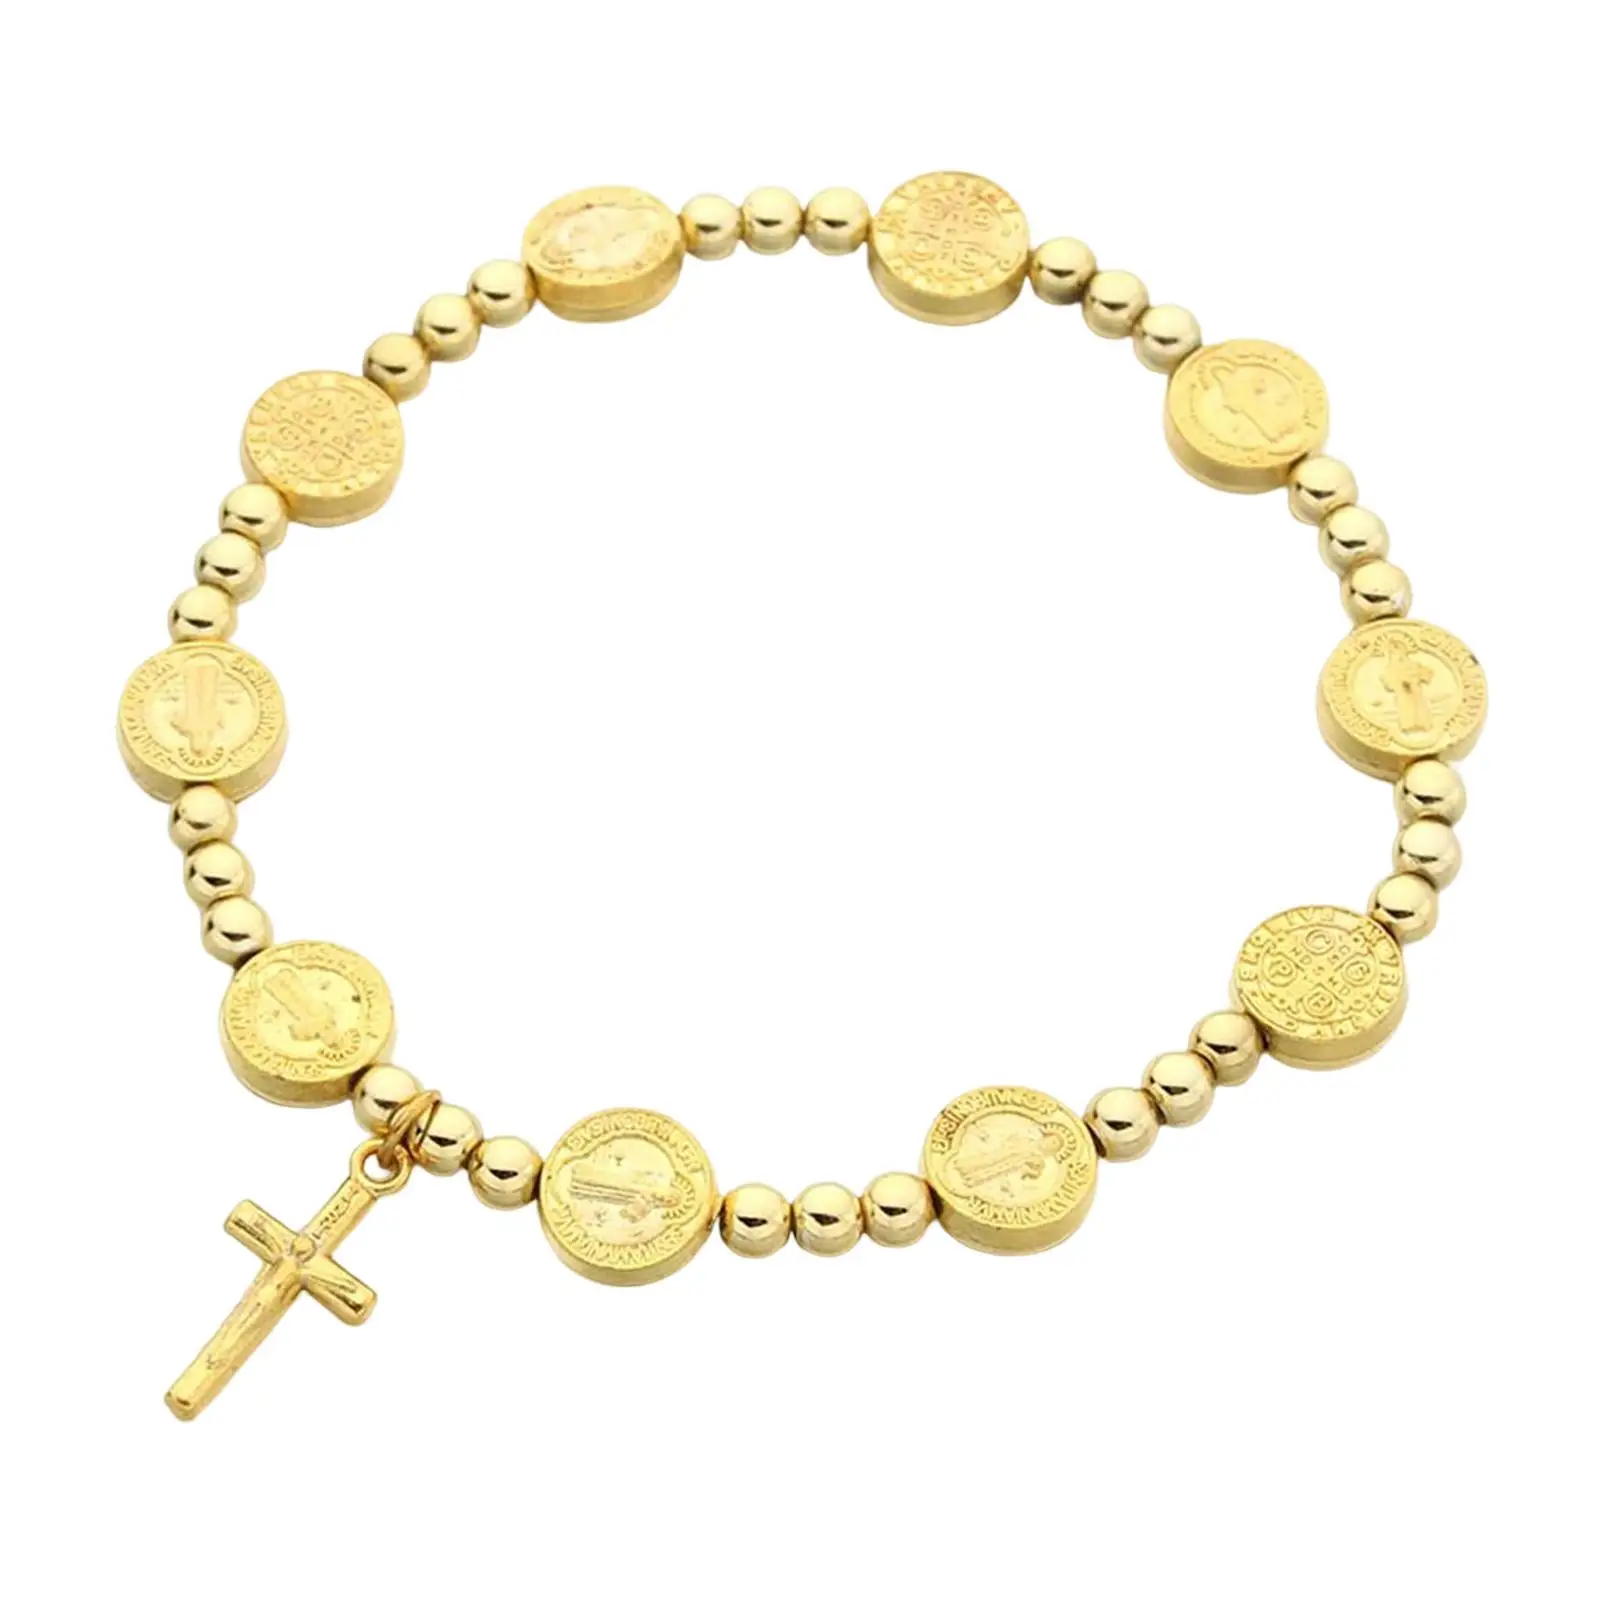 Jesus Cross Bracelet Chain Bracelet for Church Event Baptism Women Girls